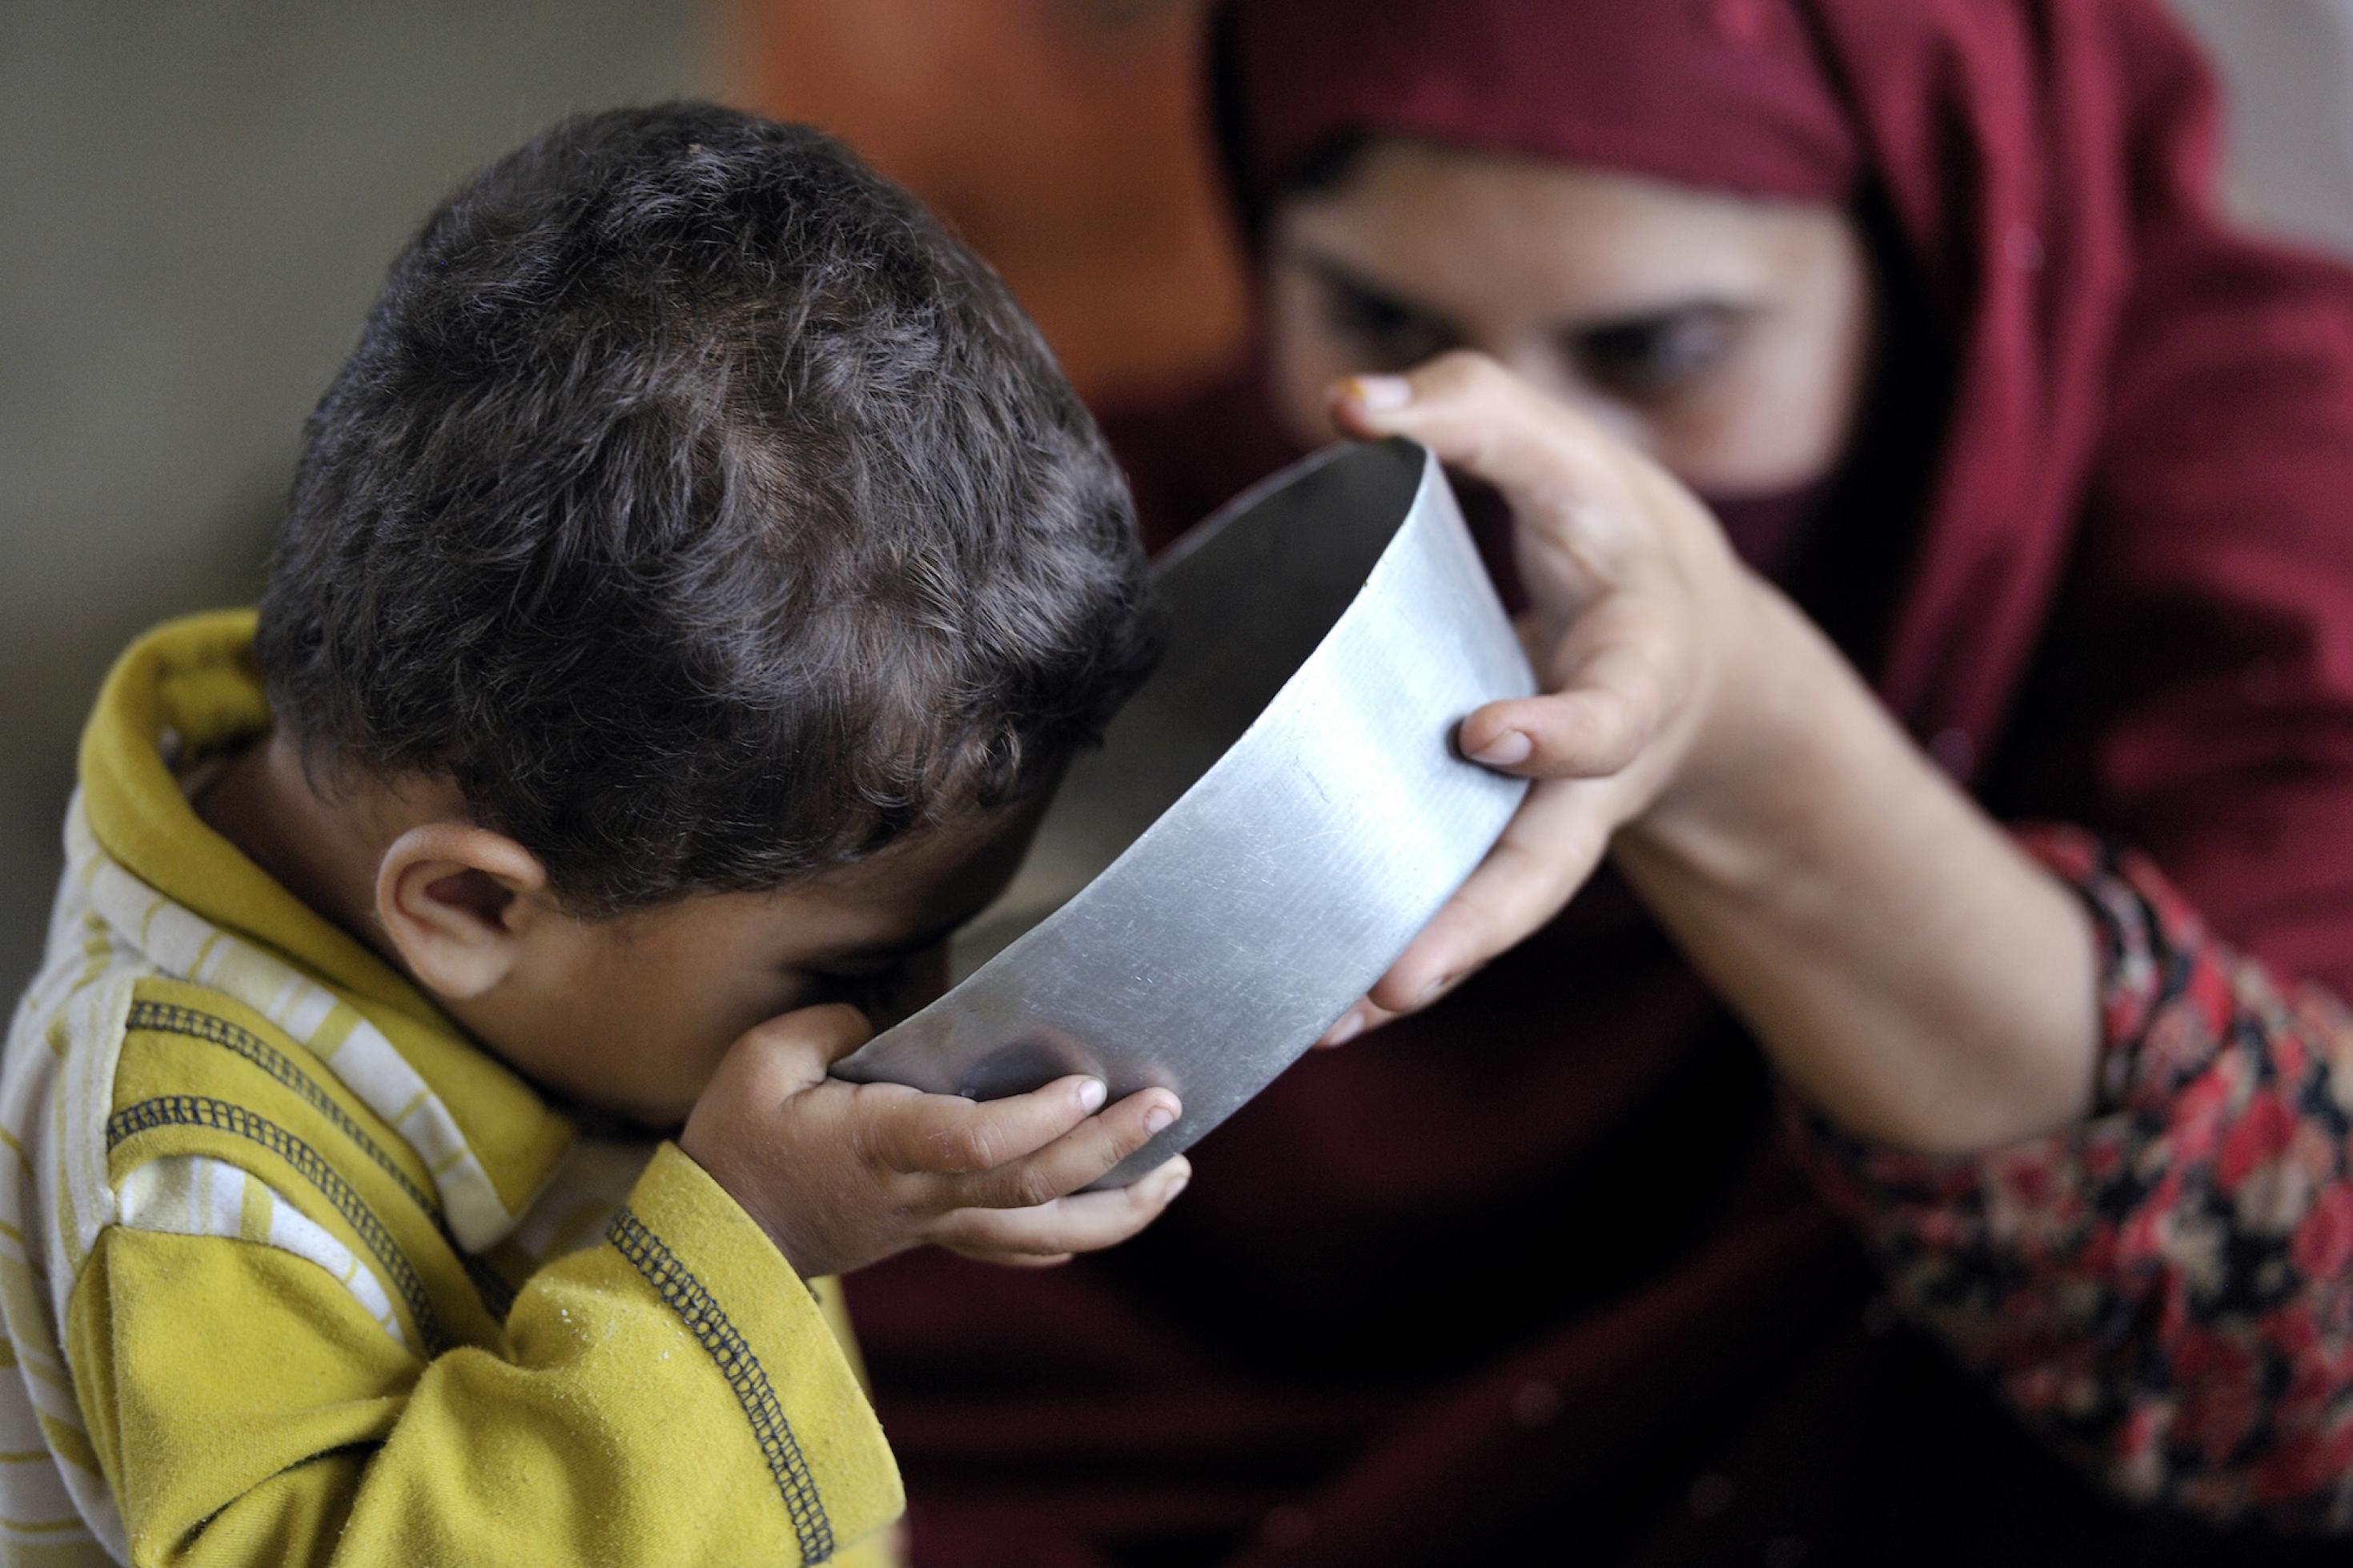 Ein kleines Kind trinkt aus einer Metallschüssel, im Hintergrund ist seine Mutter zu sehen, die das Gefäß hält. Viele Bewohner von überfluteten Orten in Pakistan mussten fliehen und fanden Schutz in Lagern und Versorgung von internationalen Unterstützern. Hier trinkt ein durstiges Kind sauberes Wasser, das UNICEF-Helfer bereitgestellt haben.